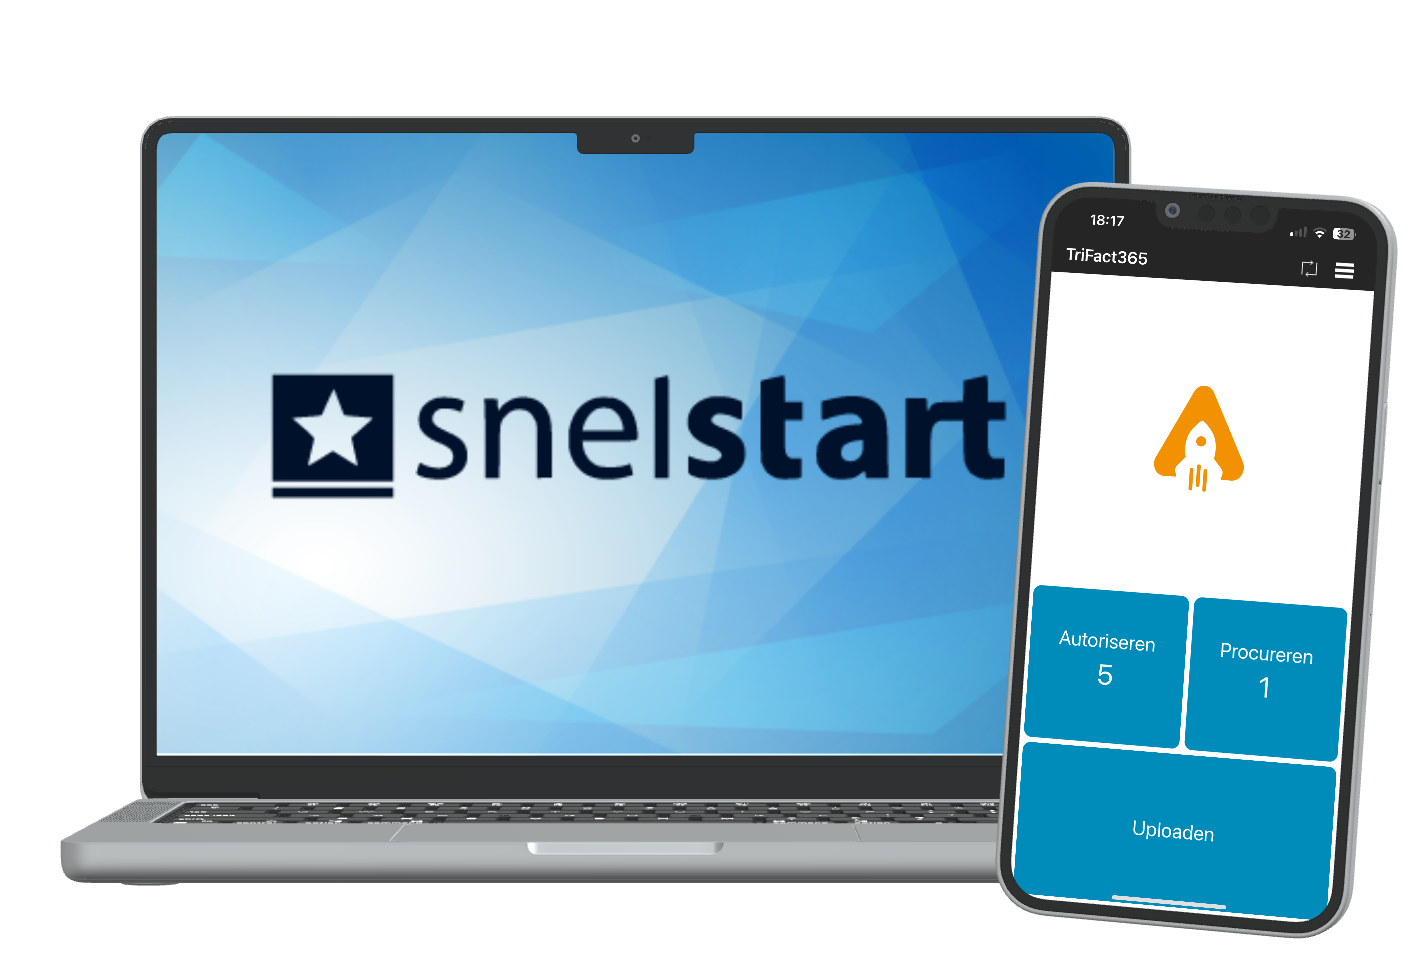 Laptop met SnelStart logo met daarnaast een smartphone met de TriFact365 app